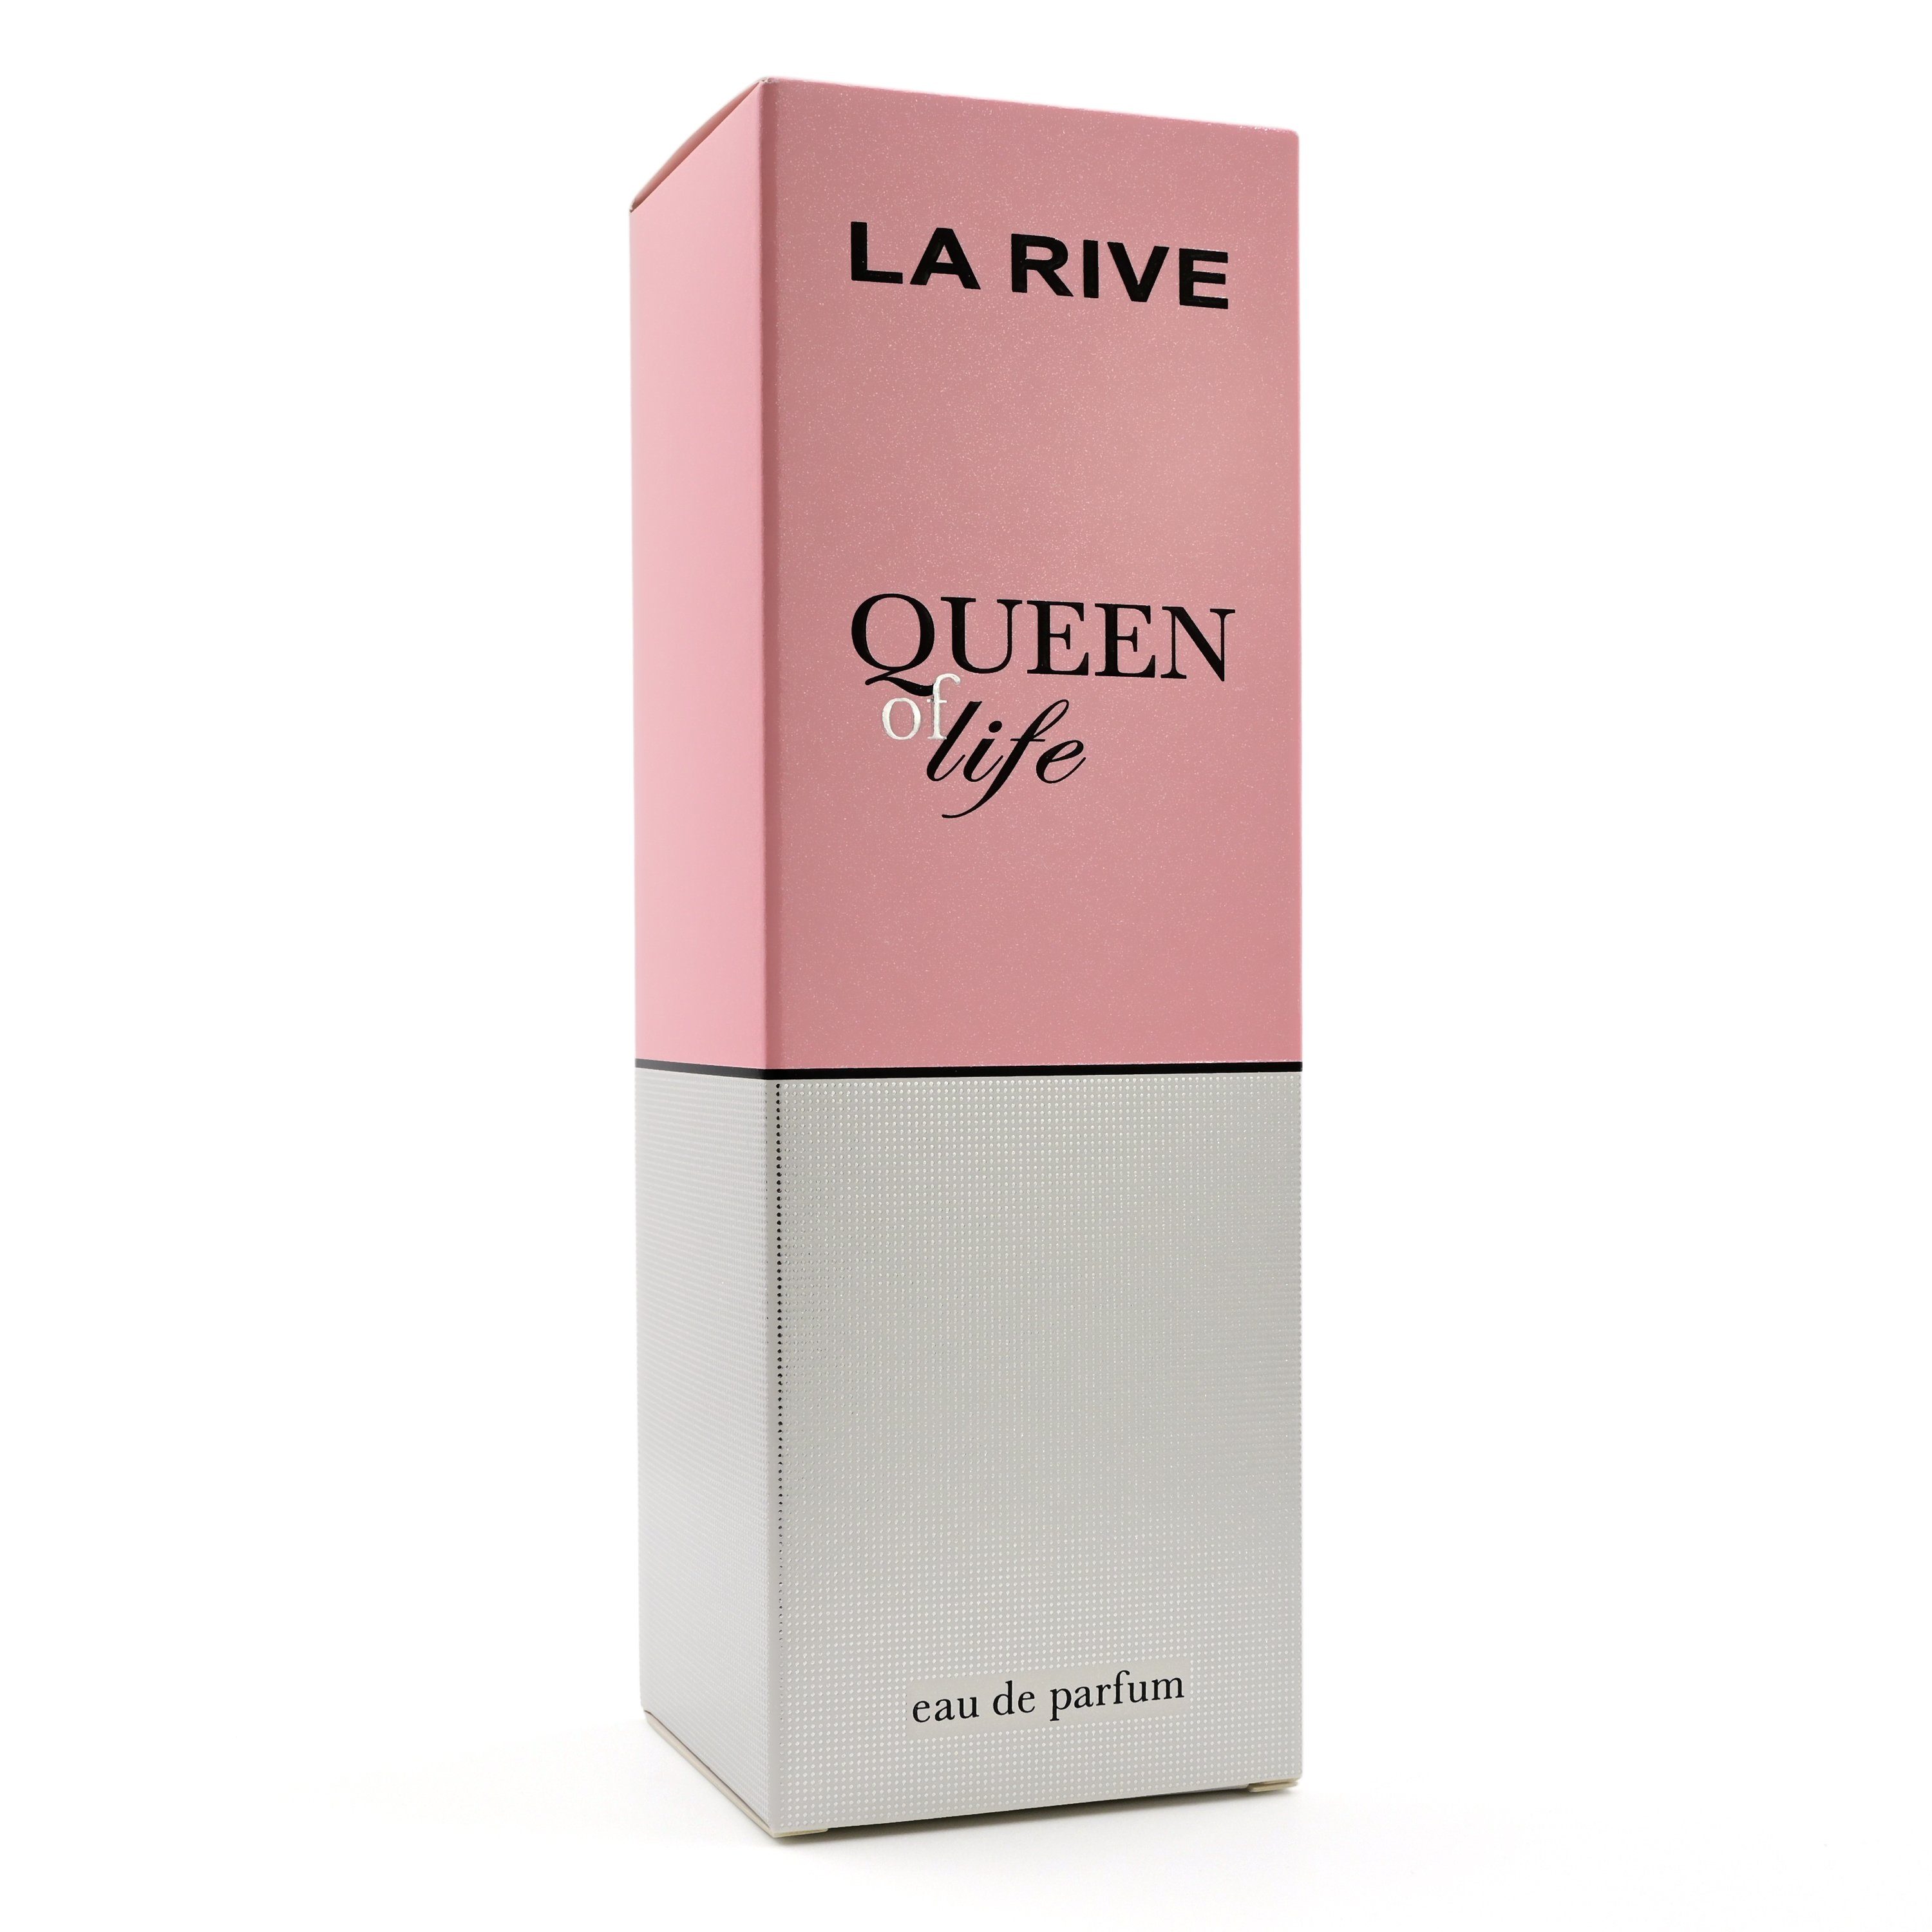 La ml Queen de RIVE Eau Eau Parfum de - - 75 Parfum Rive Life of LA